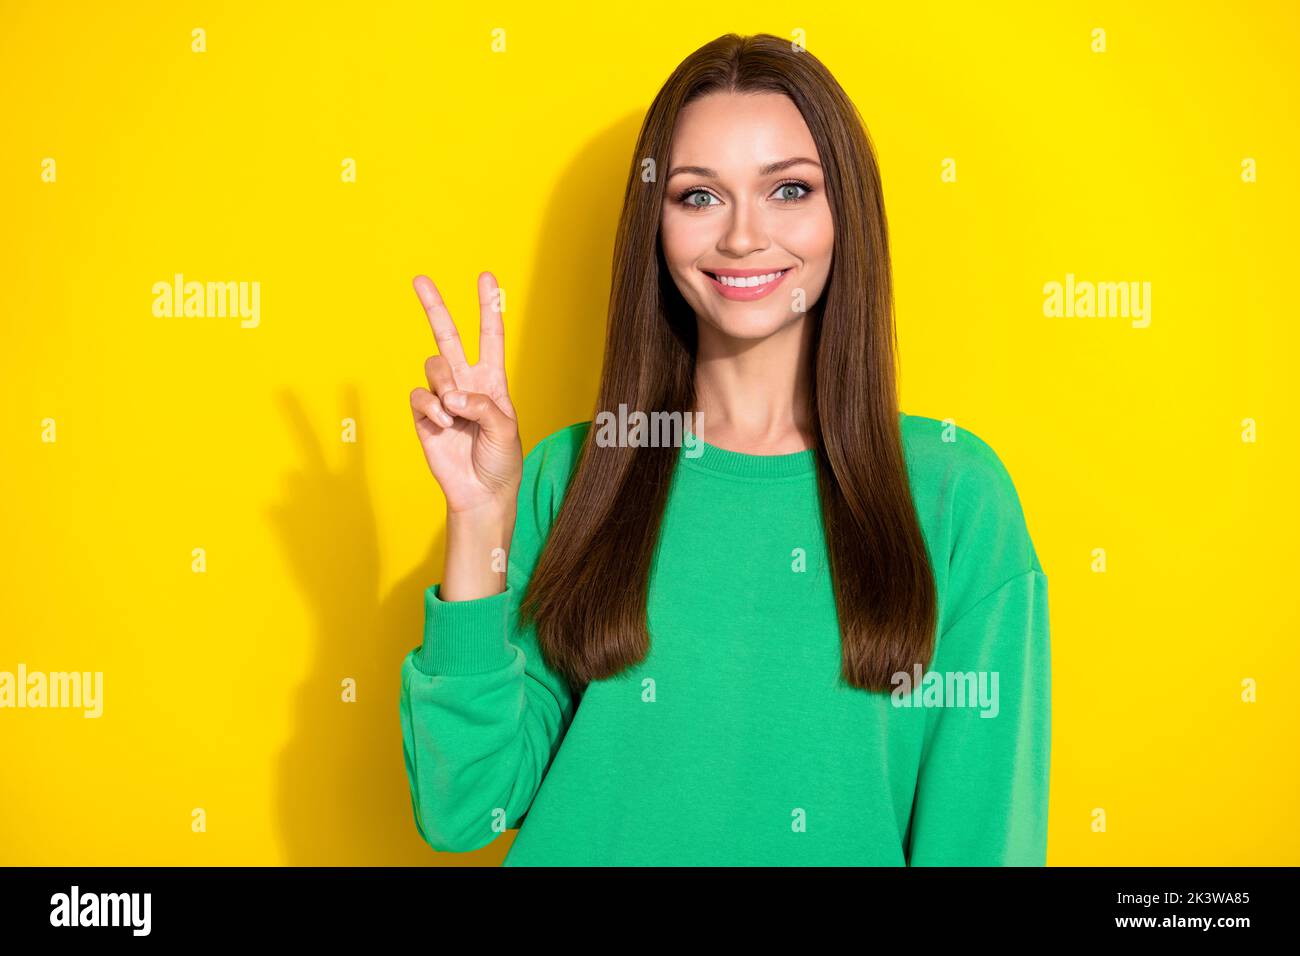 Portrait Foto von jungen wunderschönen Dame zeigt V-Zeichen lächelnd toothy glücklich isoliert auf gelbem Hintergrund Stockfoto